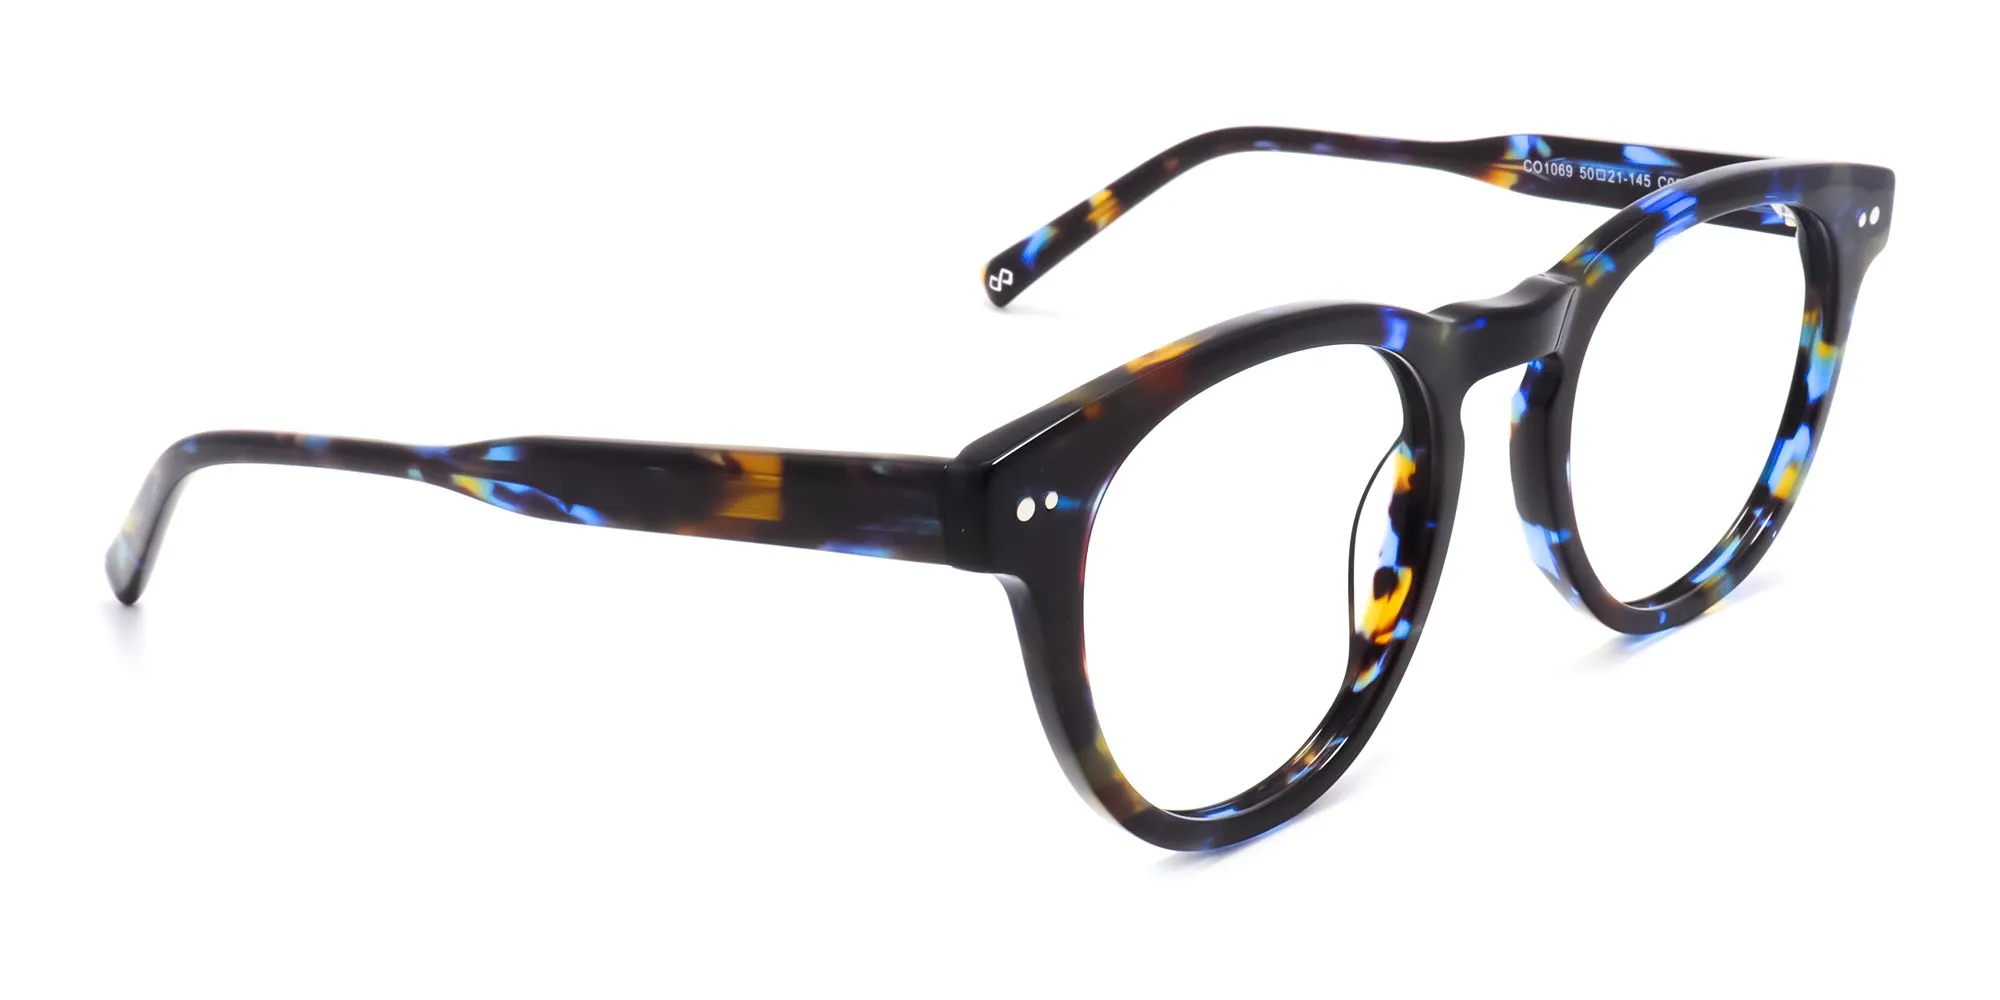 Blue Tortoise shell Glasses Frames-2